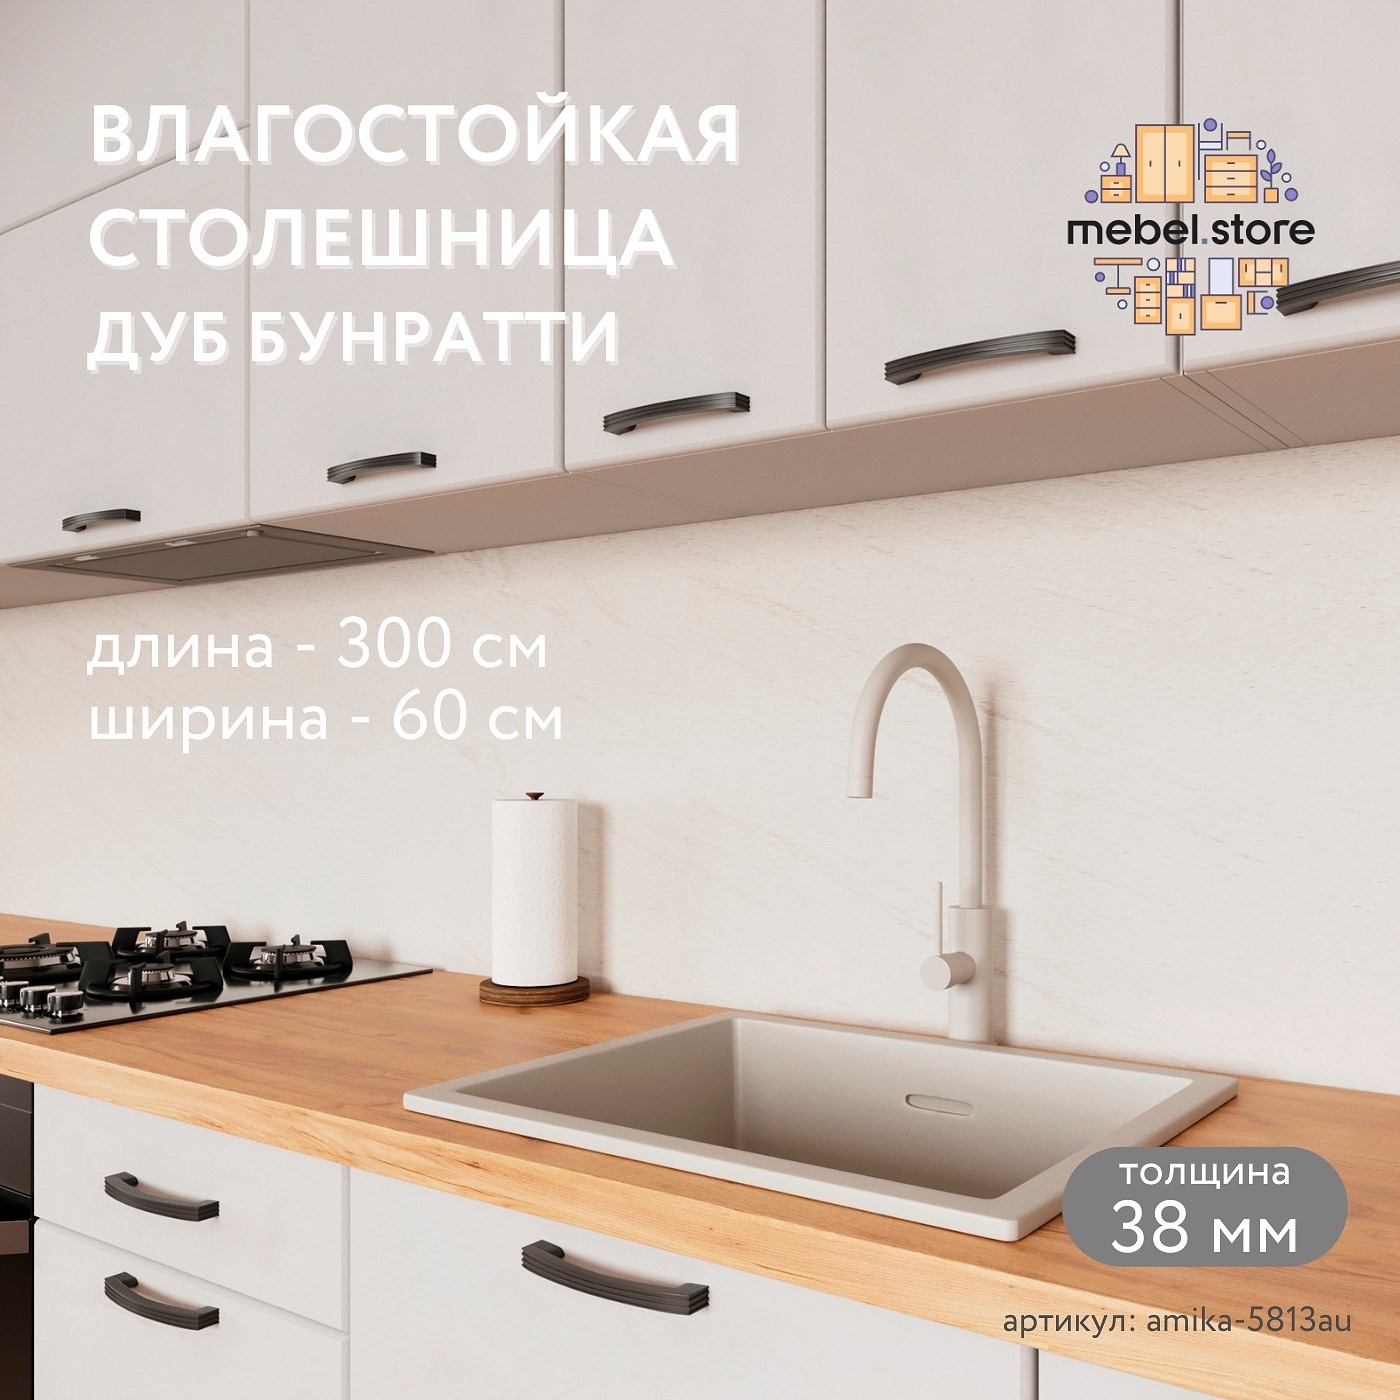 Столешница Амика-5813au минимализм для кухни - фото 1 large